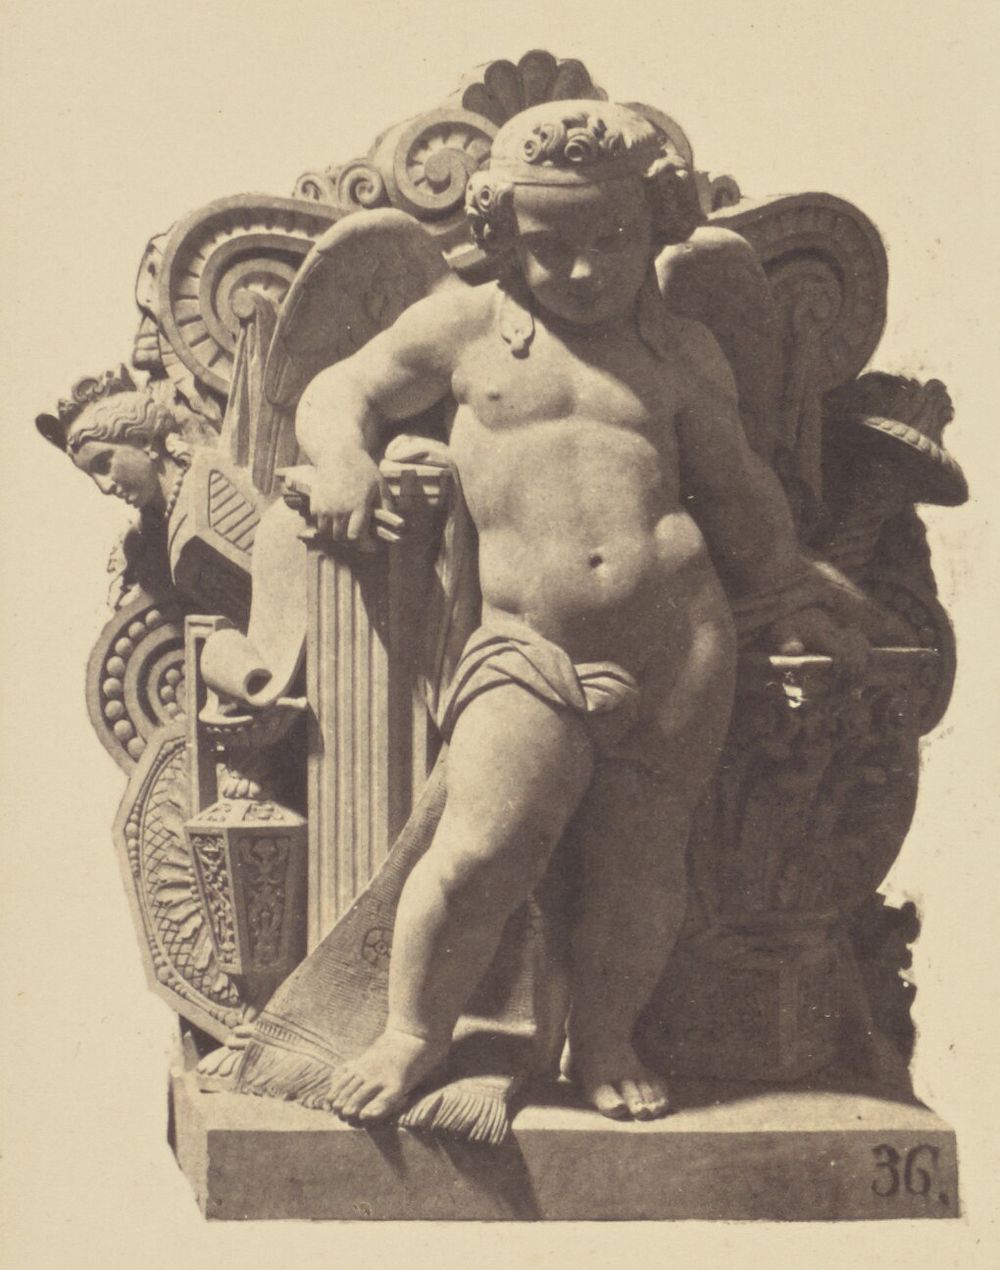 "La Renaissance", Sculpture by Louis Eugène Bion, Decoration of the Louvre, Paris by Édouard Baldus